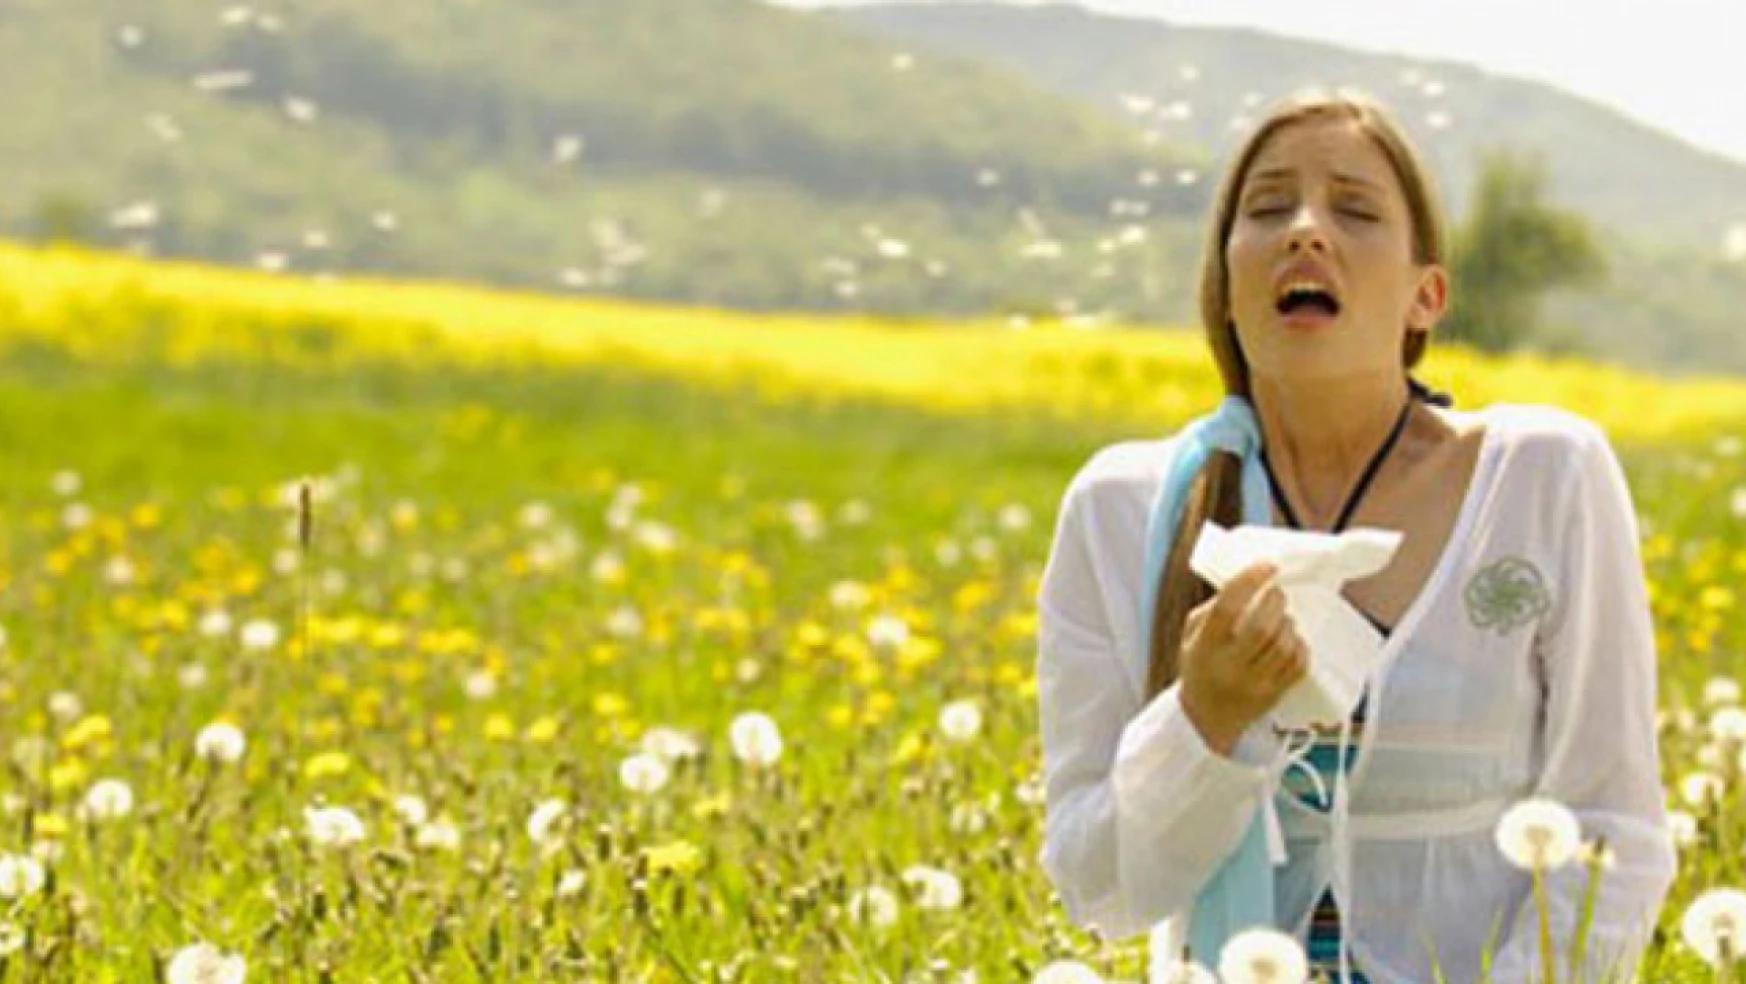 Nöbet şeklindeki hapşırık atakları bahar alerjisinin belirtisi olabilir